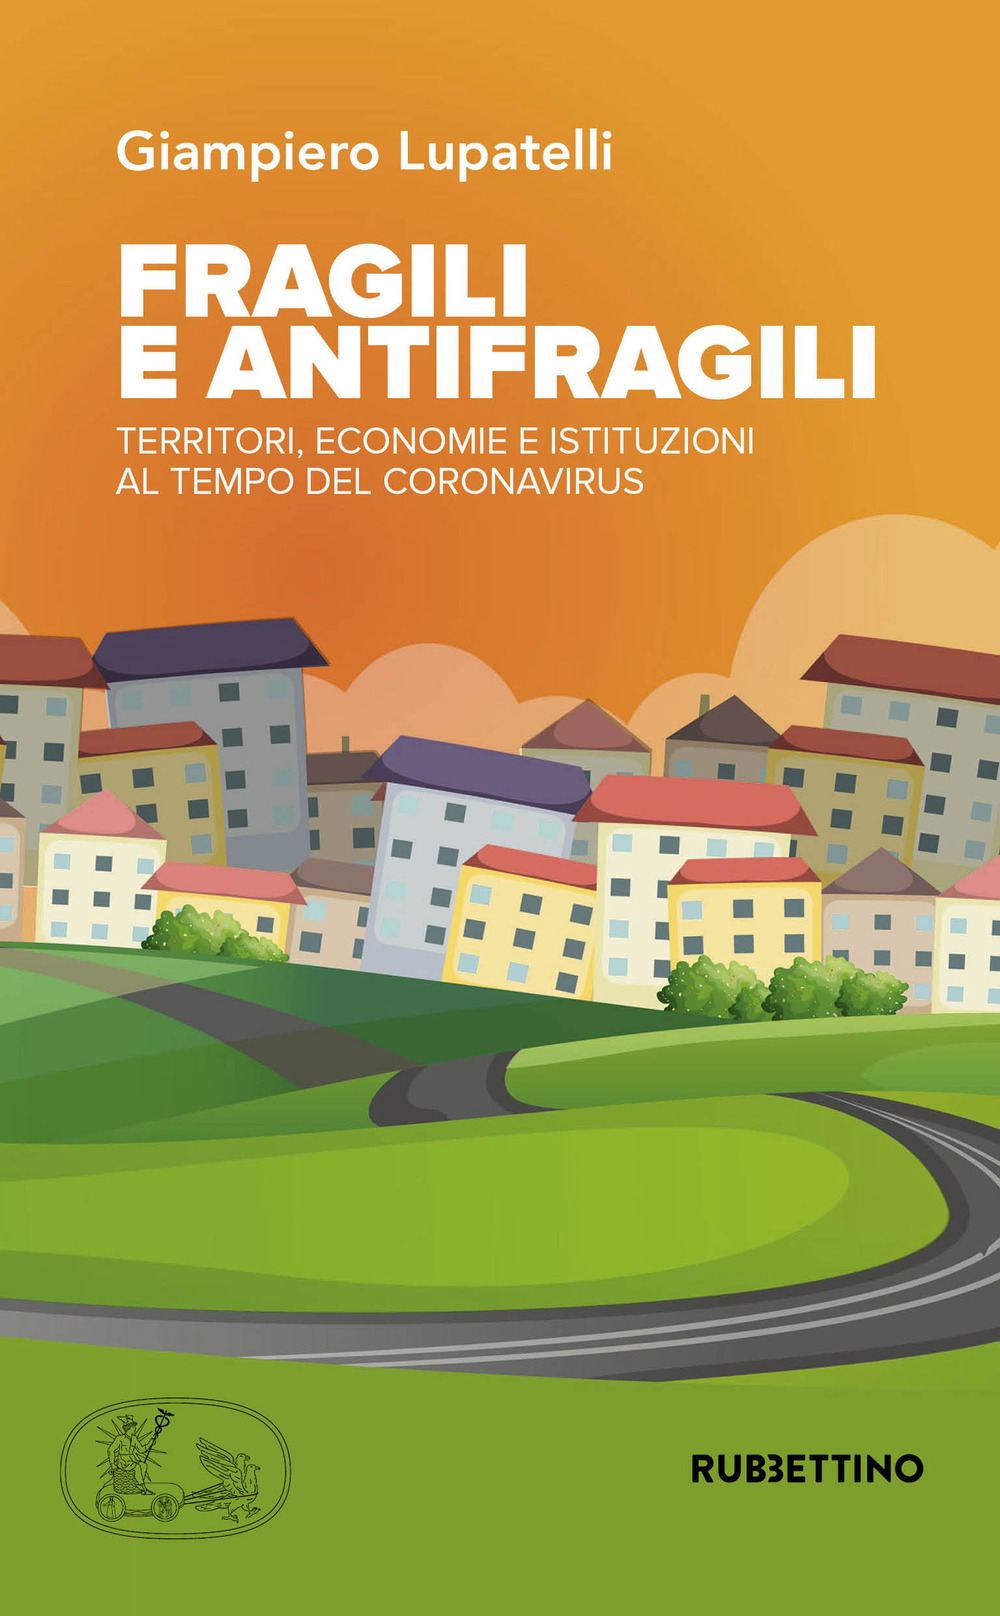 Image of Fragili e antifragili. Territori, economie e istituzioni al tempo del coronavirus